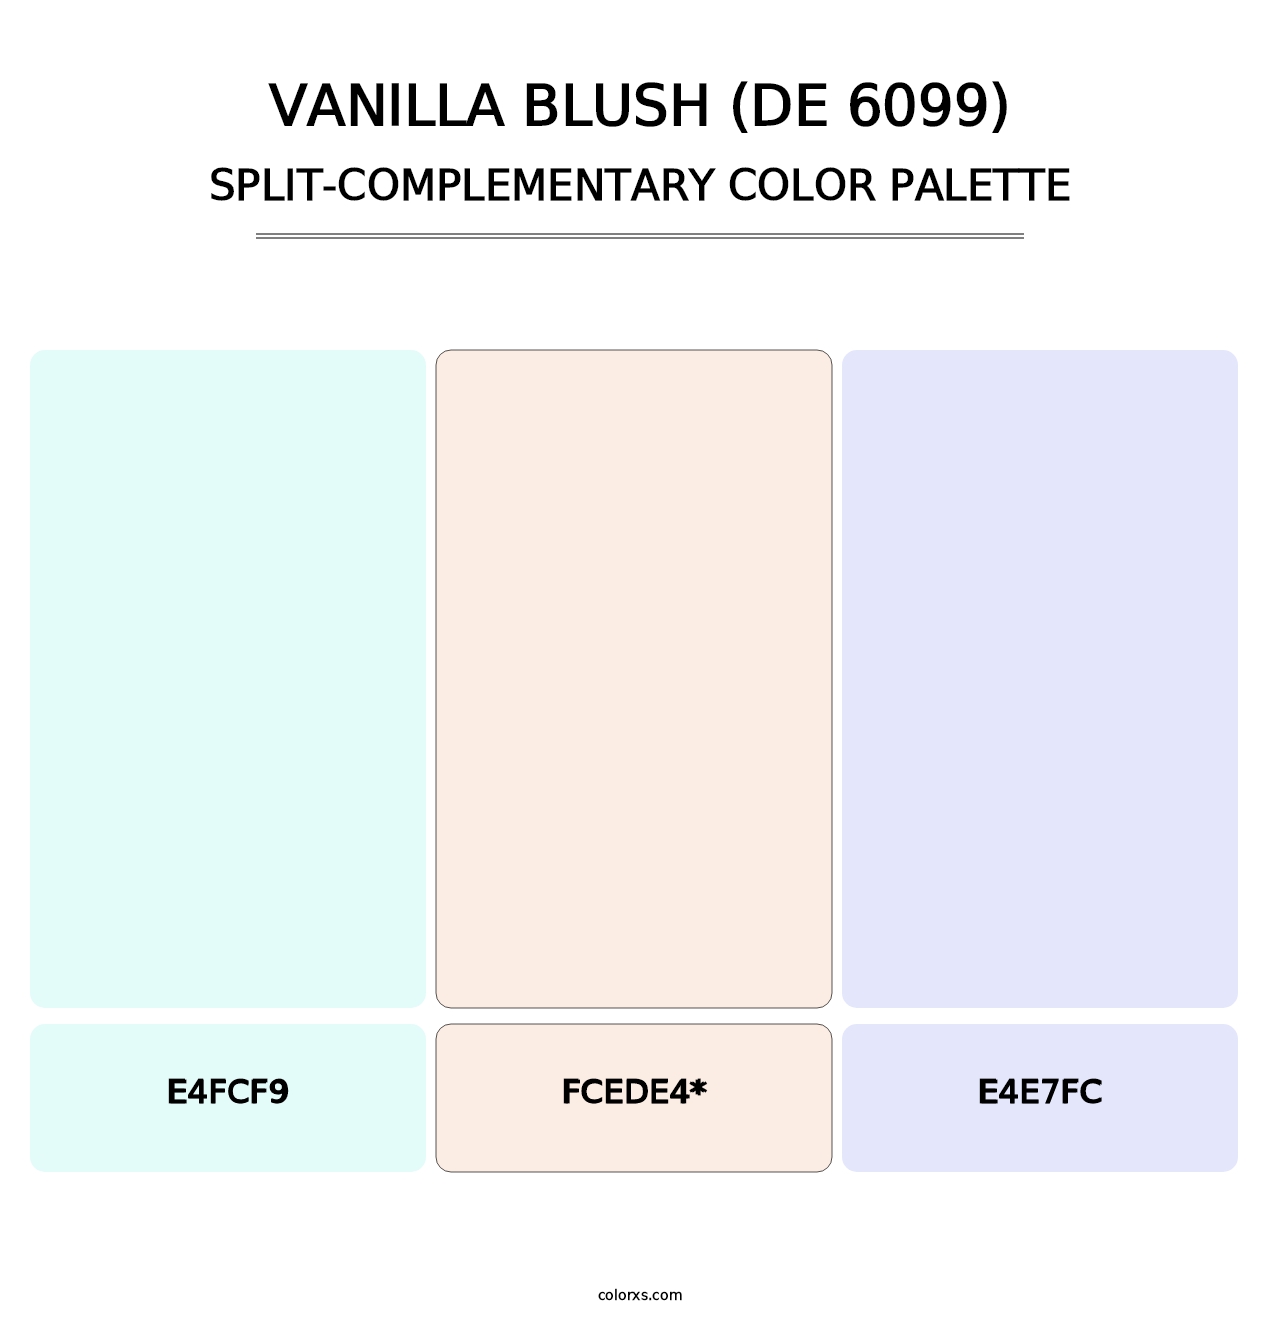 Vanilla Blush (DE 6099) - Split-Complementary Color Palette